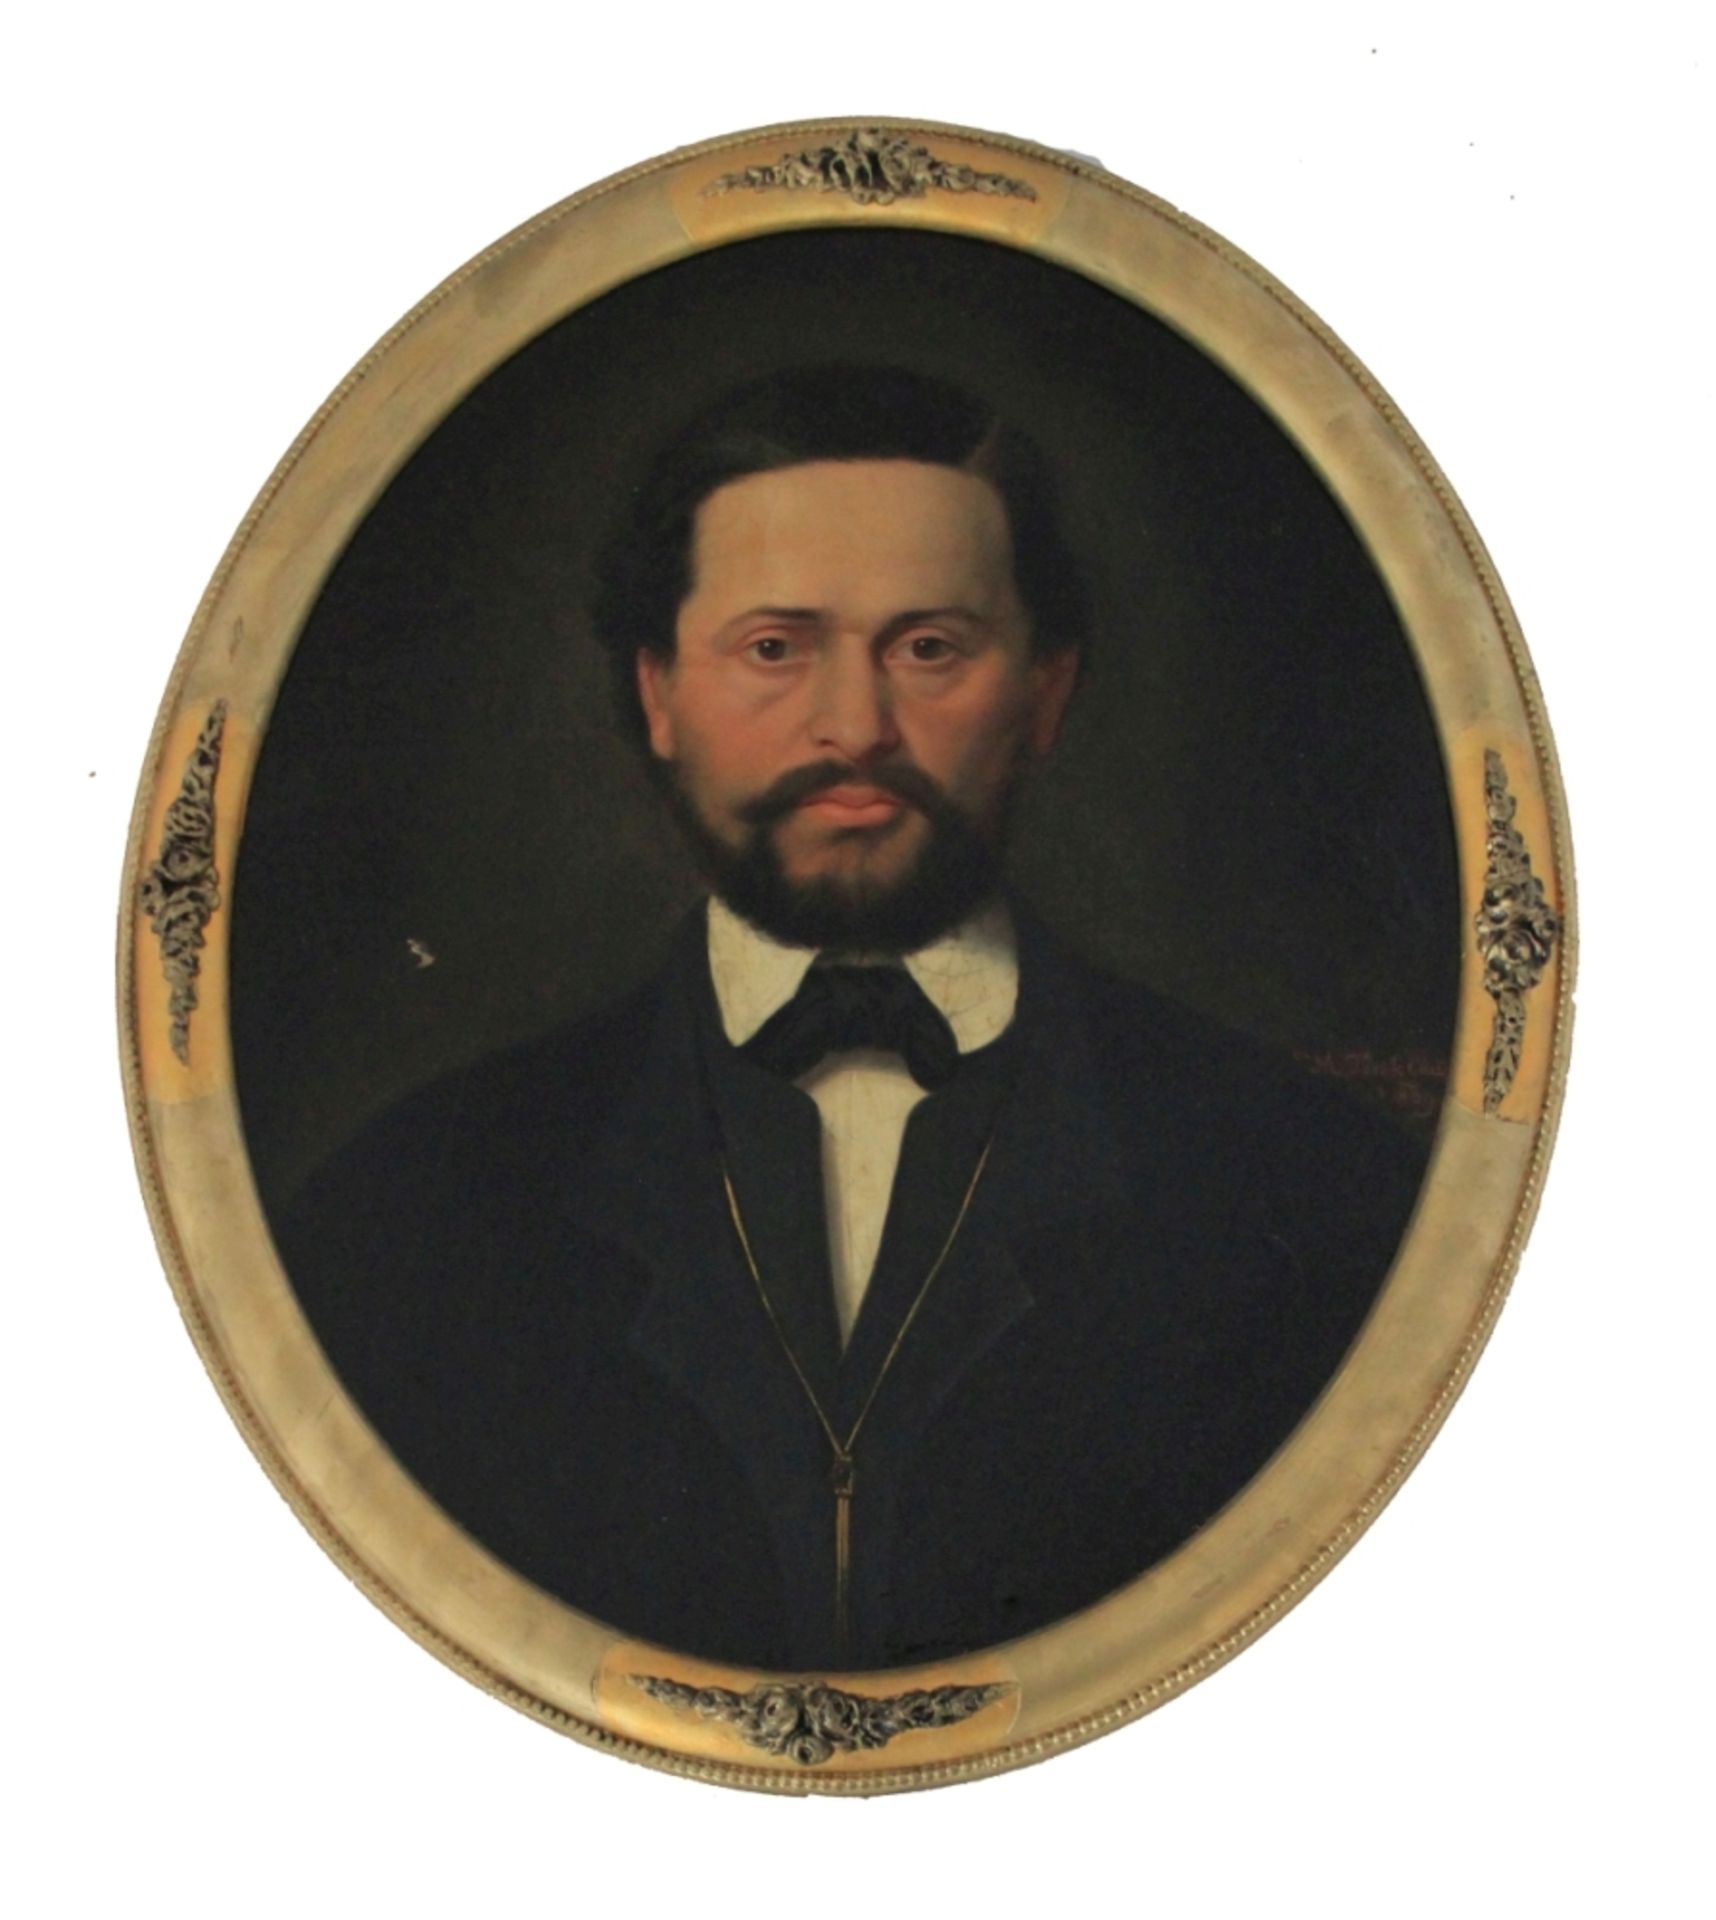 Gemälde - Eduard TÖRÖK attr. (Ungarn 1836-1892) "Herrenbildnis", r.u. signiert M. Török Eduard,